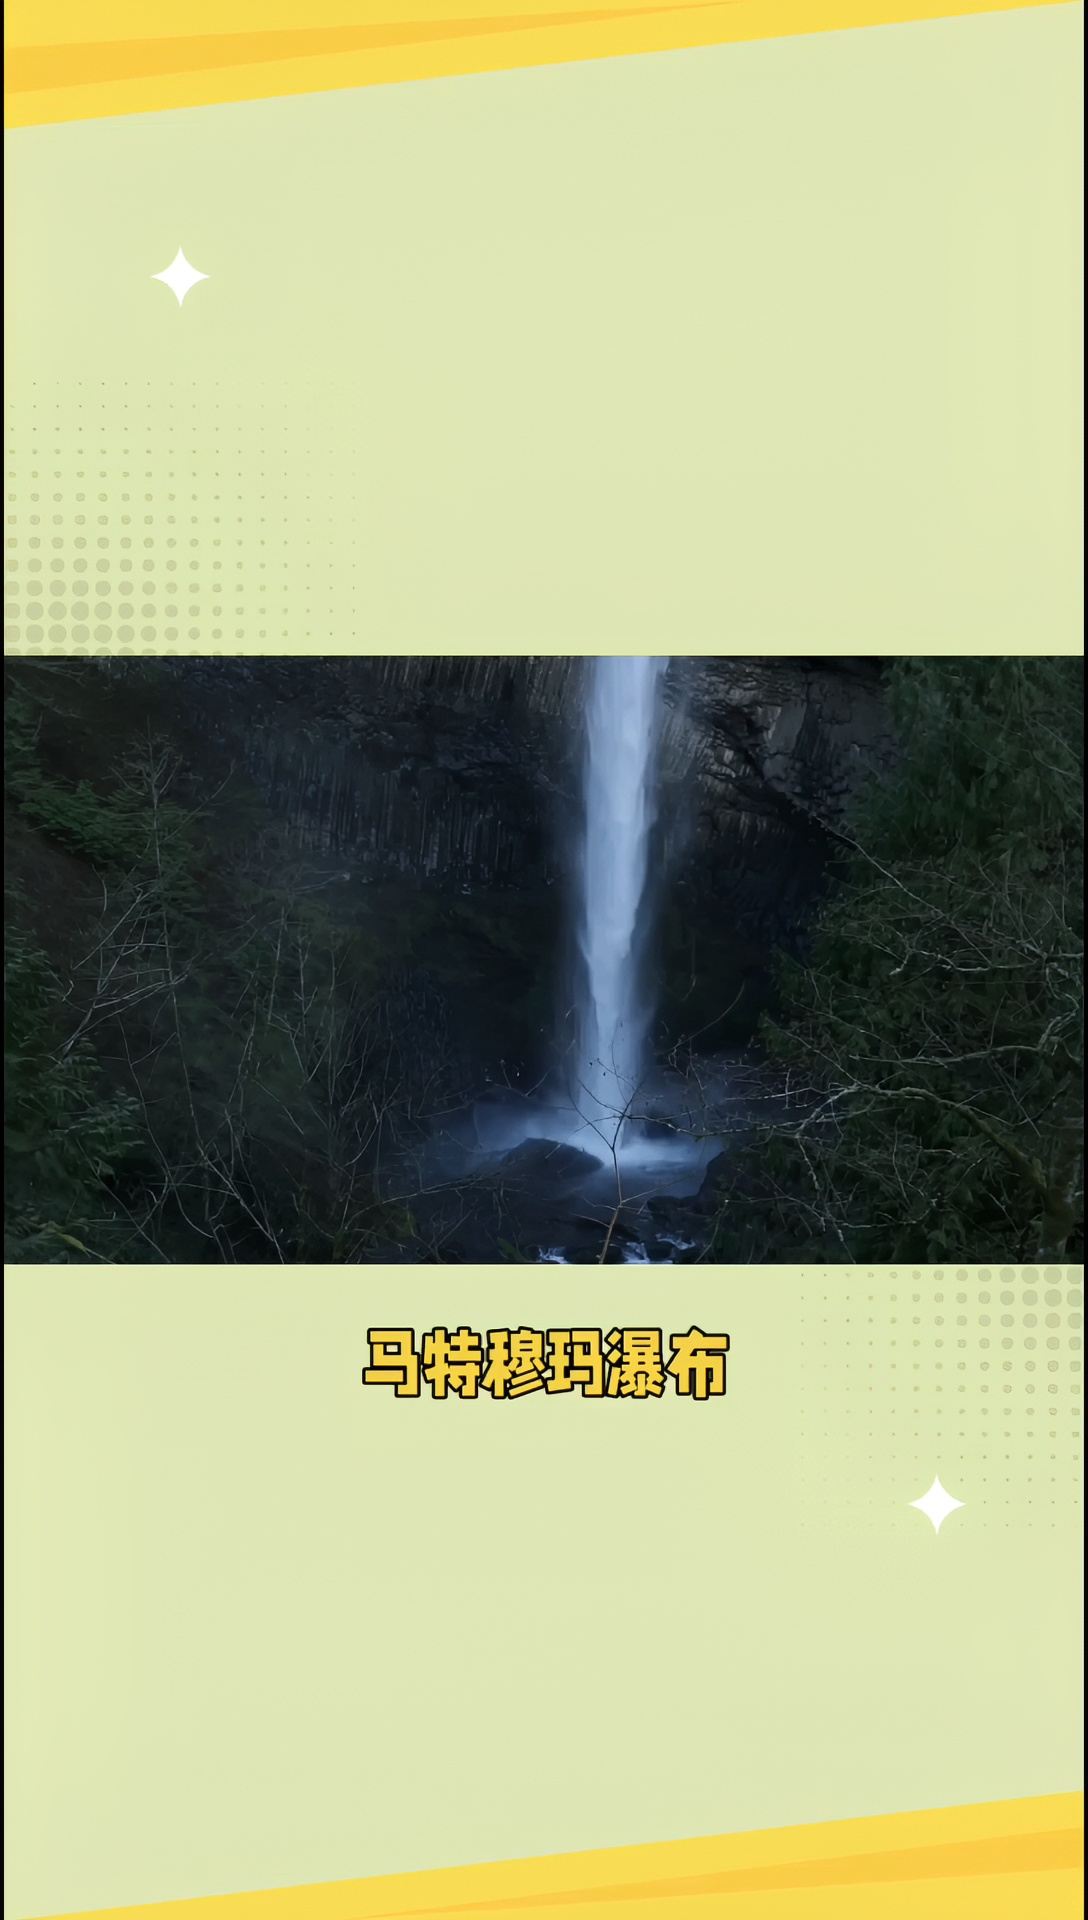 马特穆玛瀑布，感受壮观的自然风光